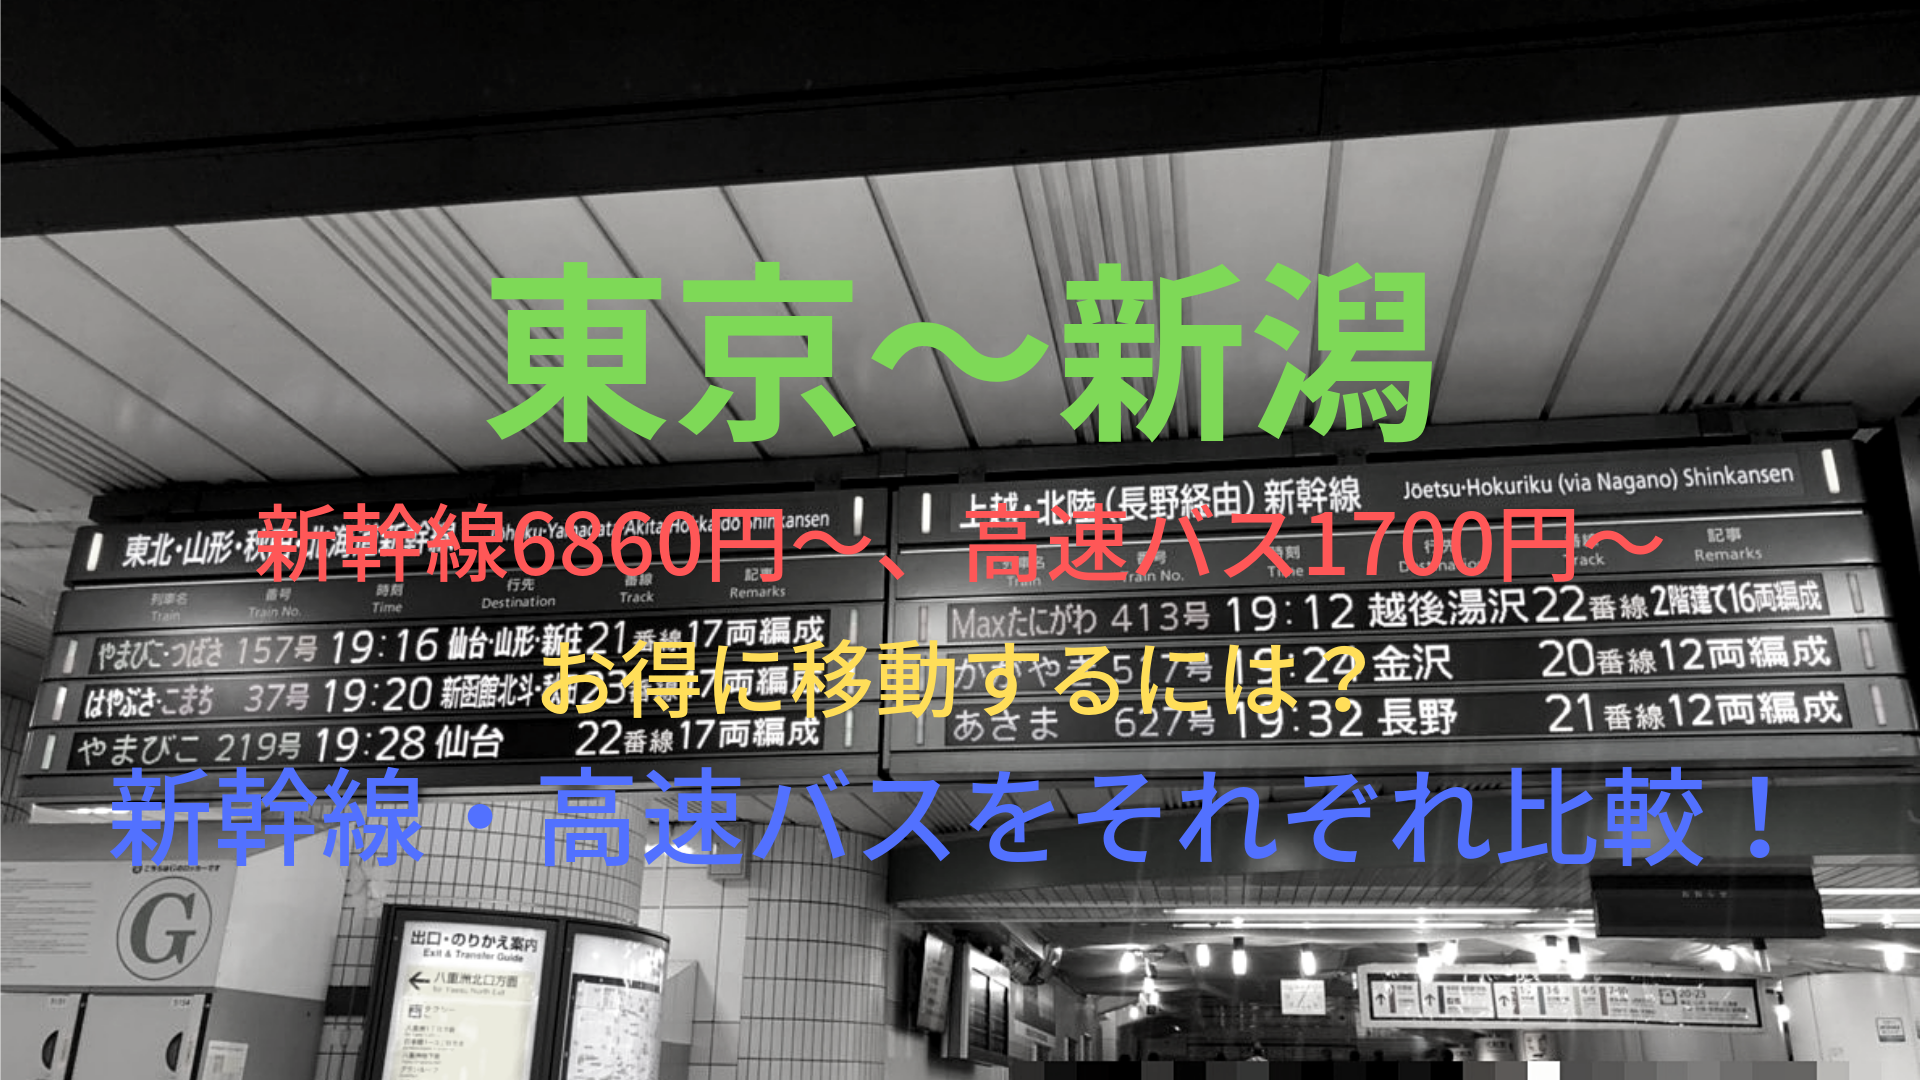 東京 新潟 最安1700円 格安で移動する方法は 新幹線 高速バスをそれぞれ比較 ばしたく交通